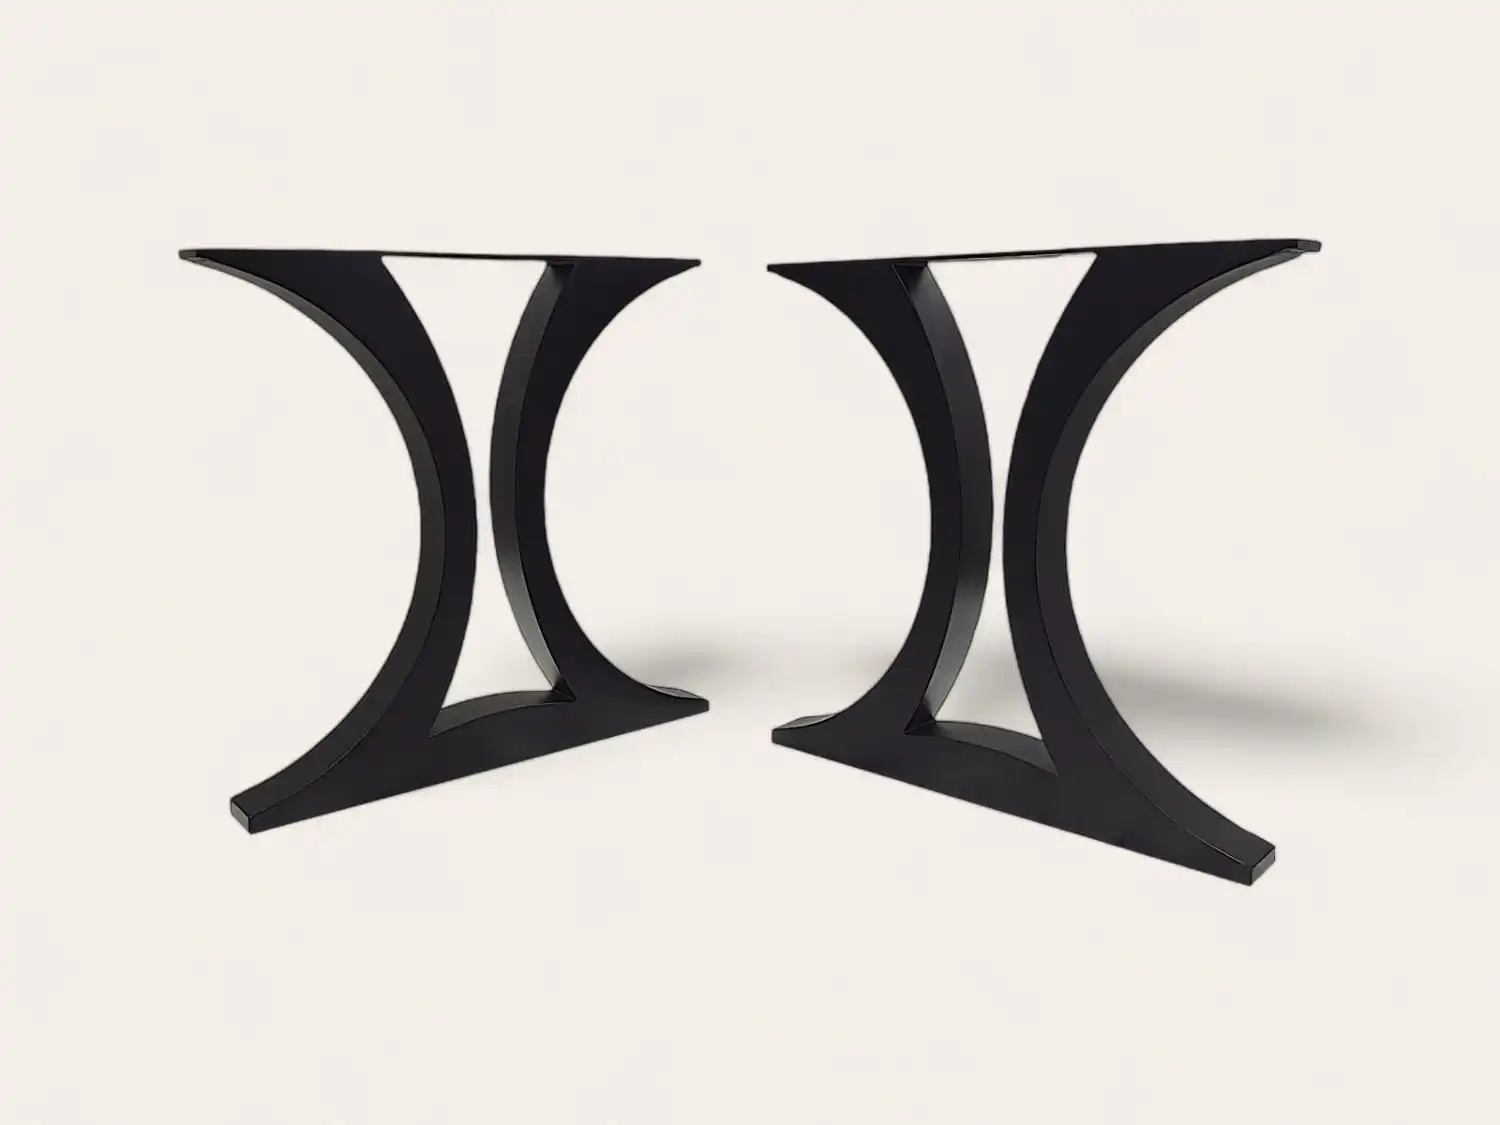 Paire de pieds de table noirs et courbés au design moderne sur fond blanc.